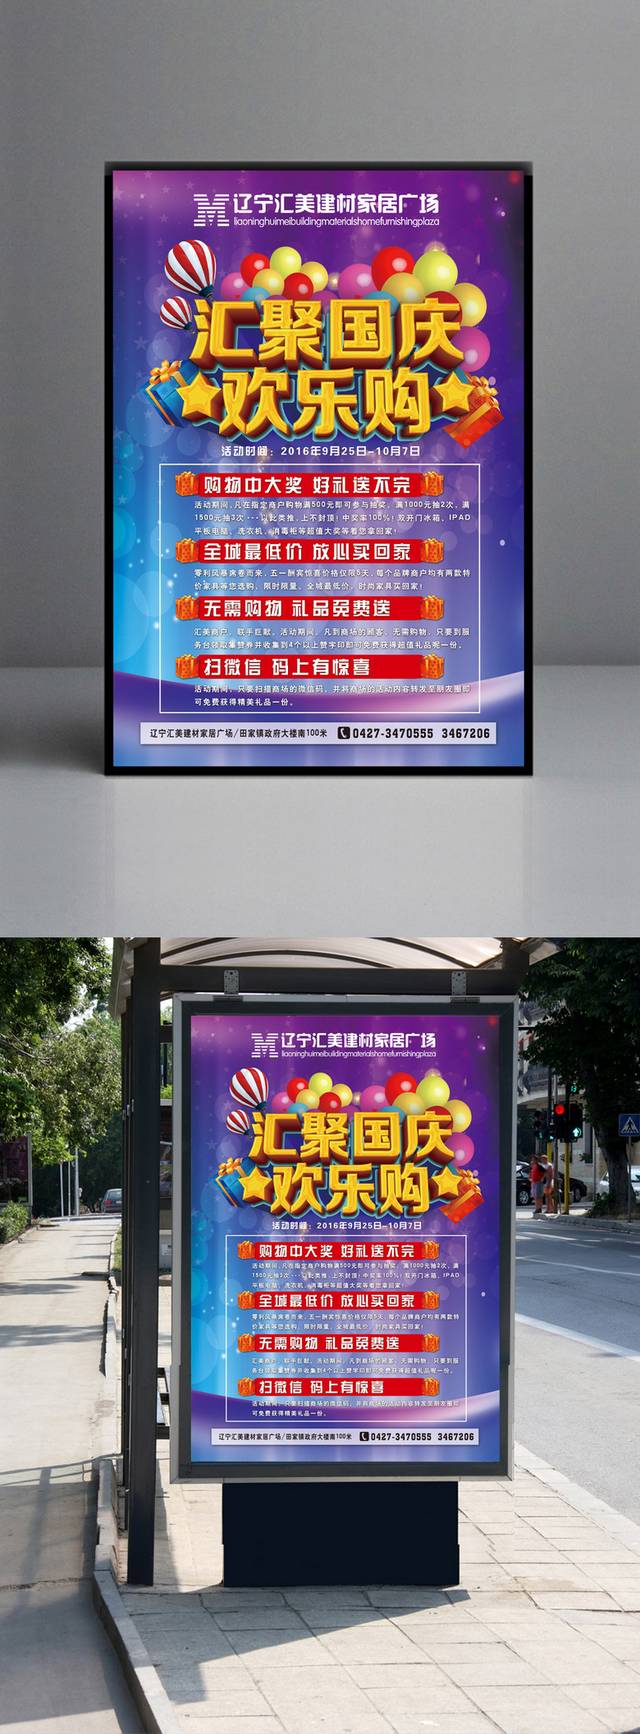 简约炫彩国庆节促销海报